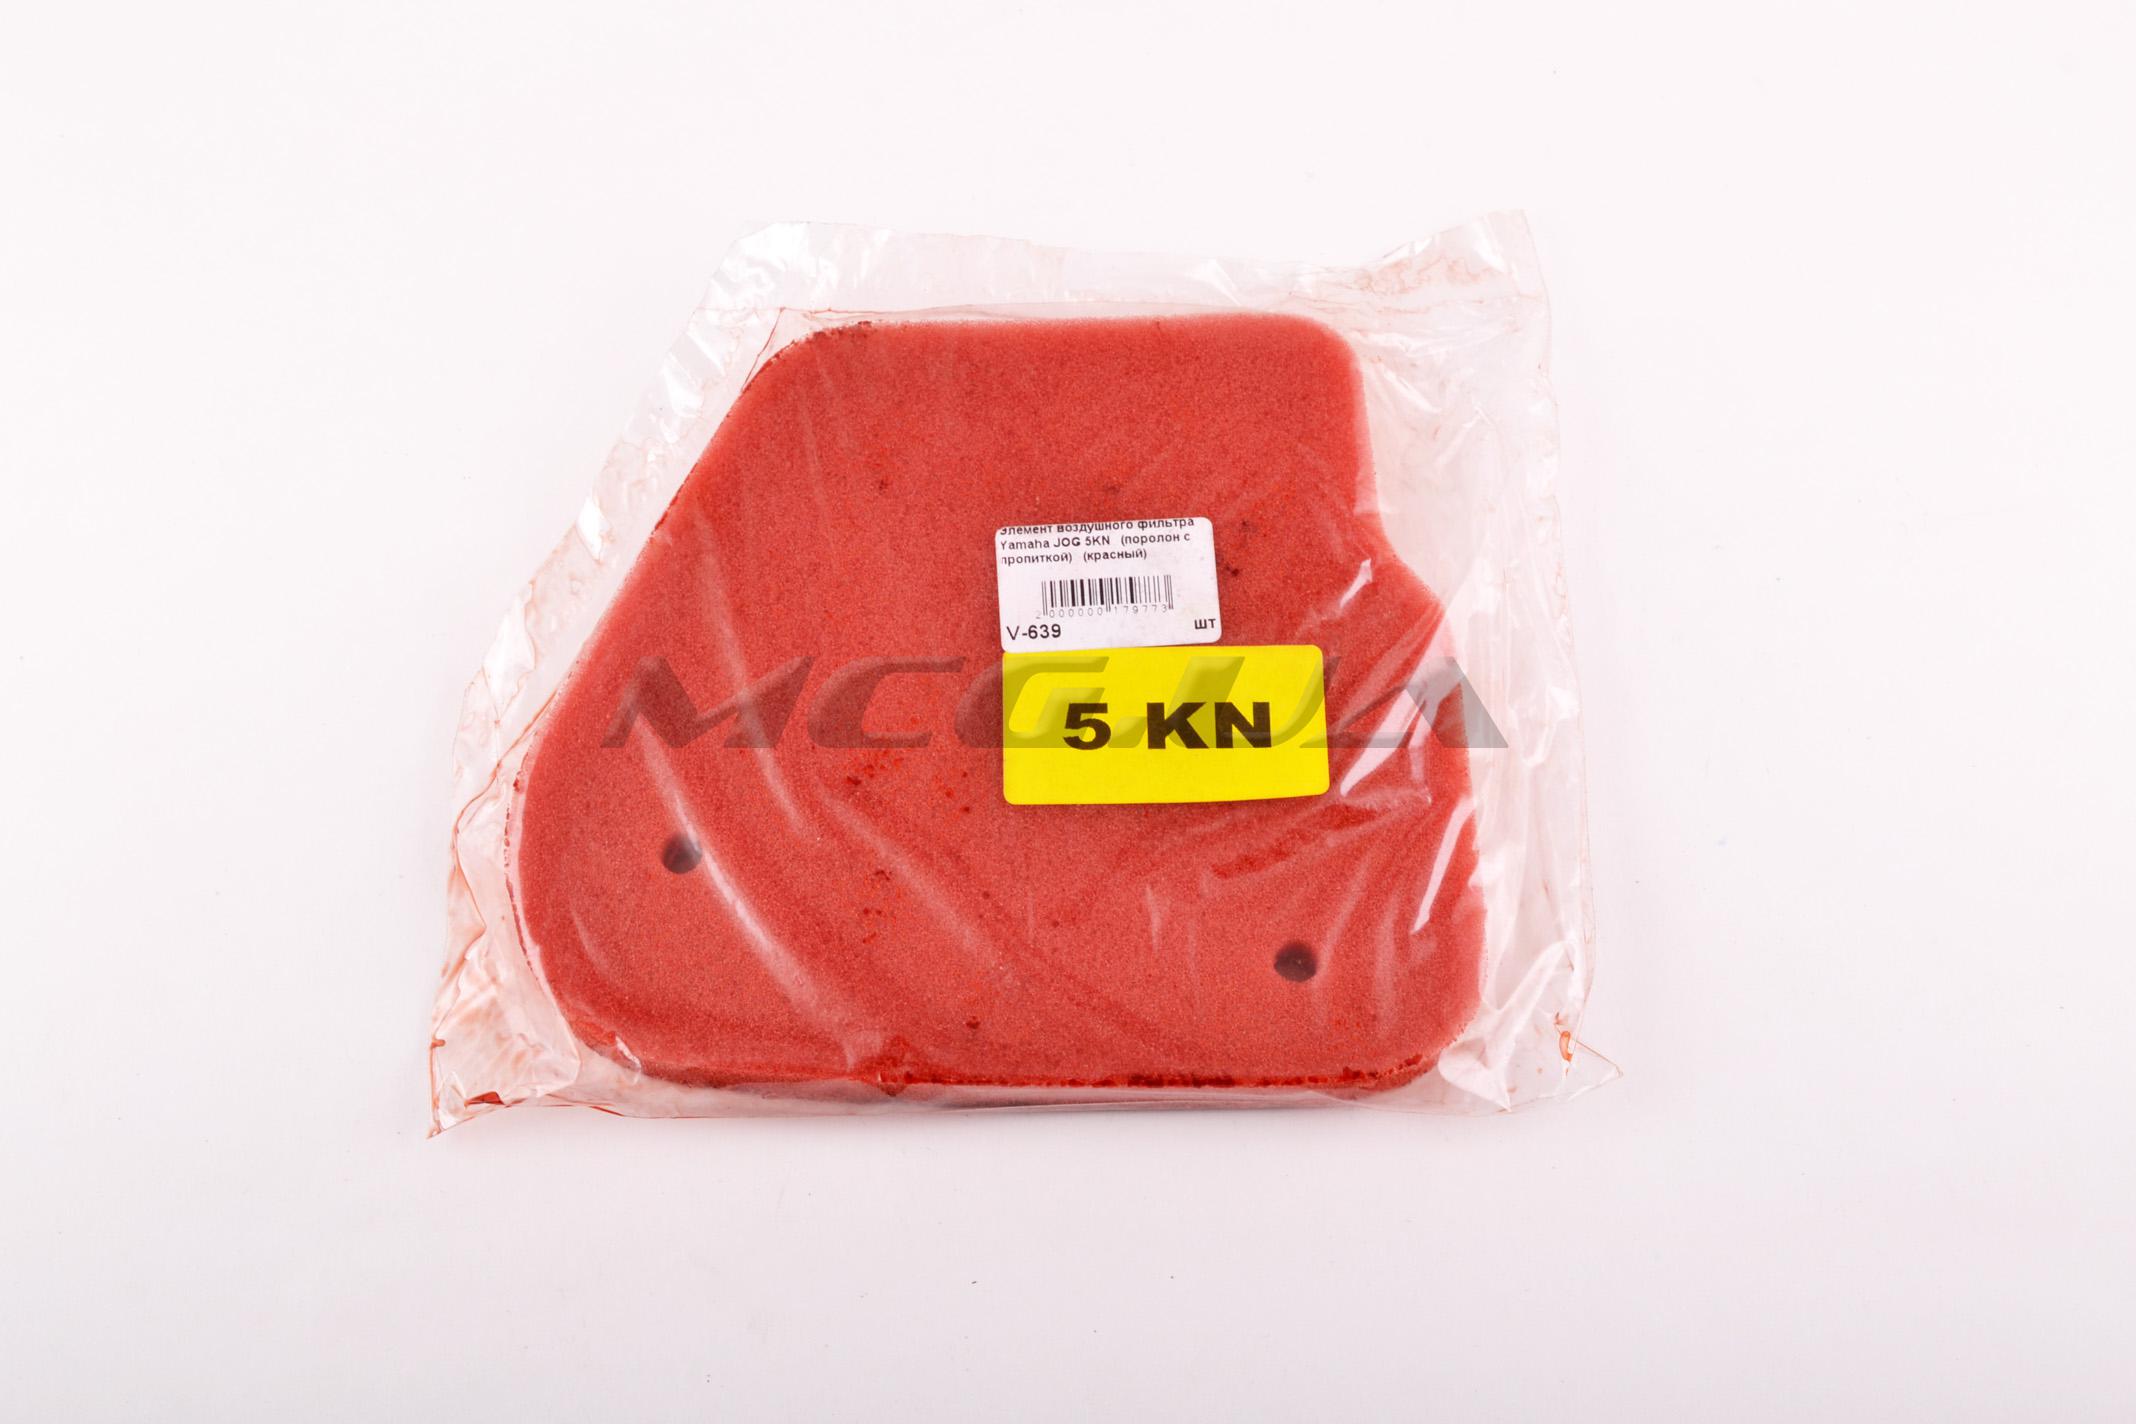 Элемент воздушного фильтра Yamaha JOG 5KN (поролон с пропиткой) (красный)